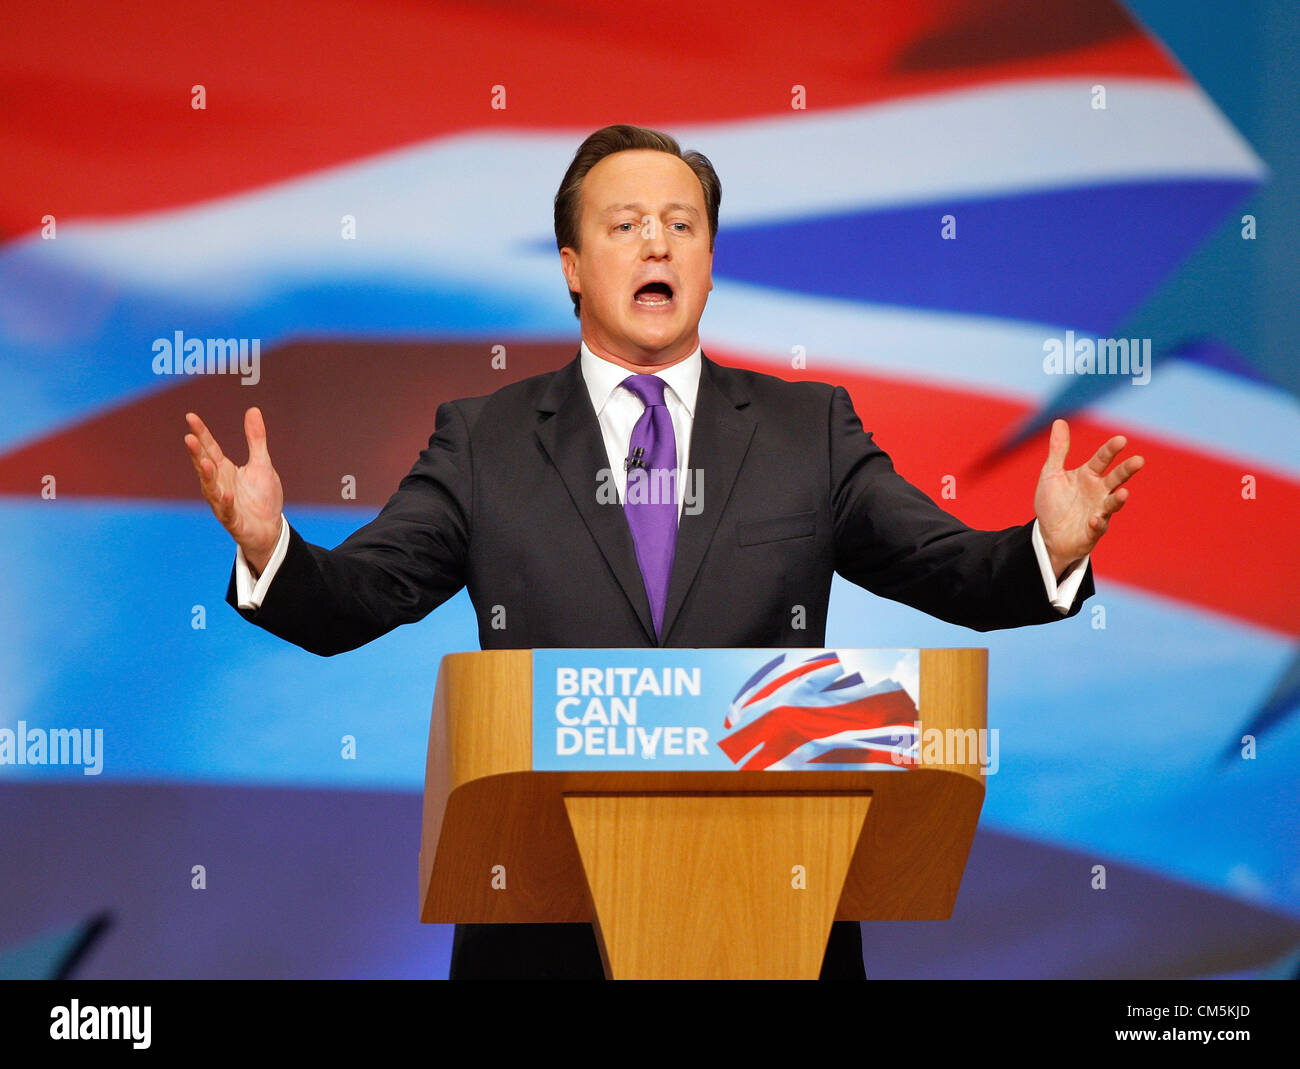 DAVID Cameron, el Primer Ministro el 10 de octubre de 2012, el ICC Birmingham England Foto de stock